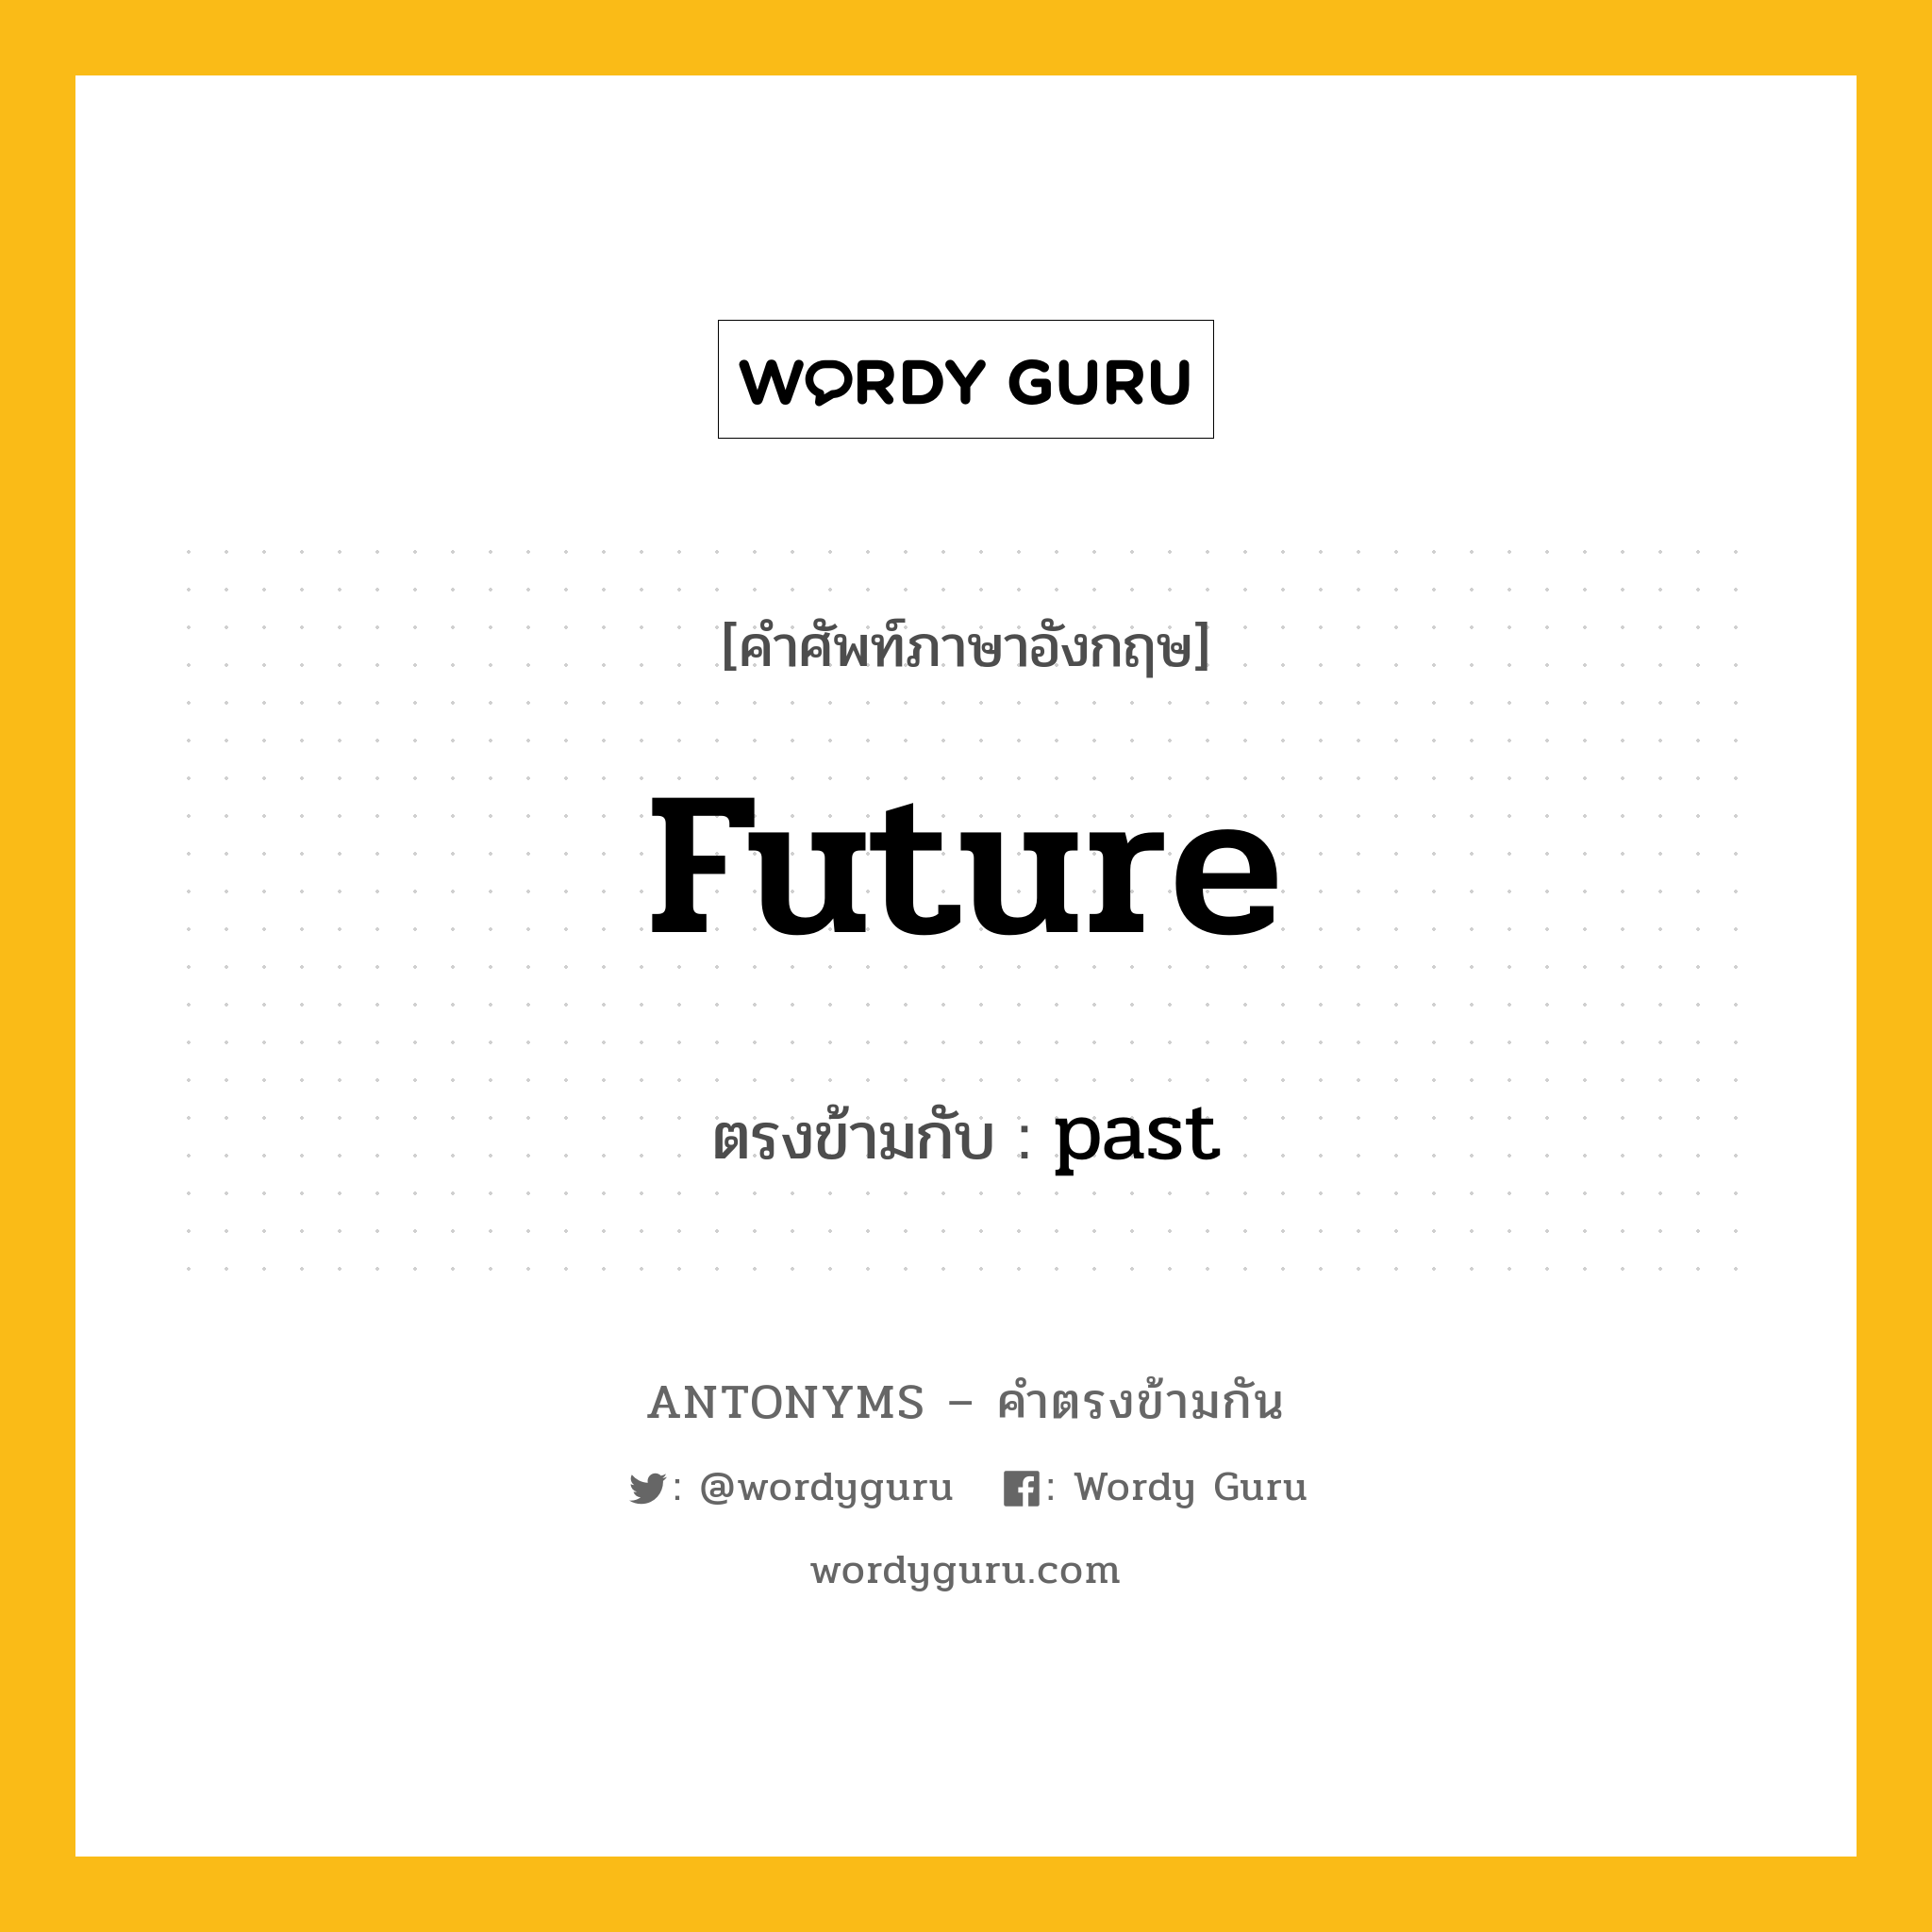 future เป็นคำตรงข้ามกับคำไหนบ้าง?, คำศัพท์ภาษาอังกฤษ future ตรงข้ามกับ past หมวด past